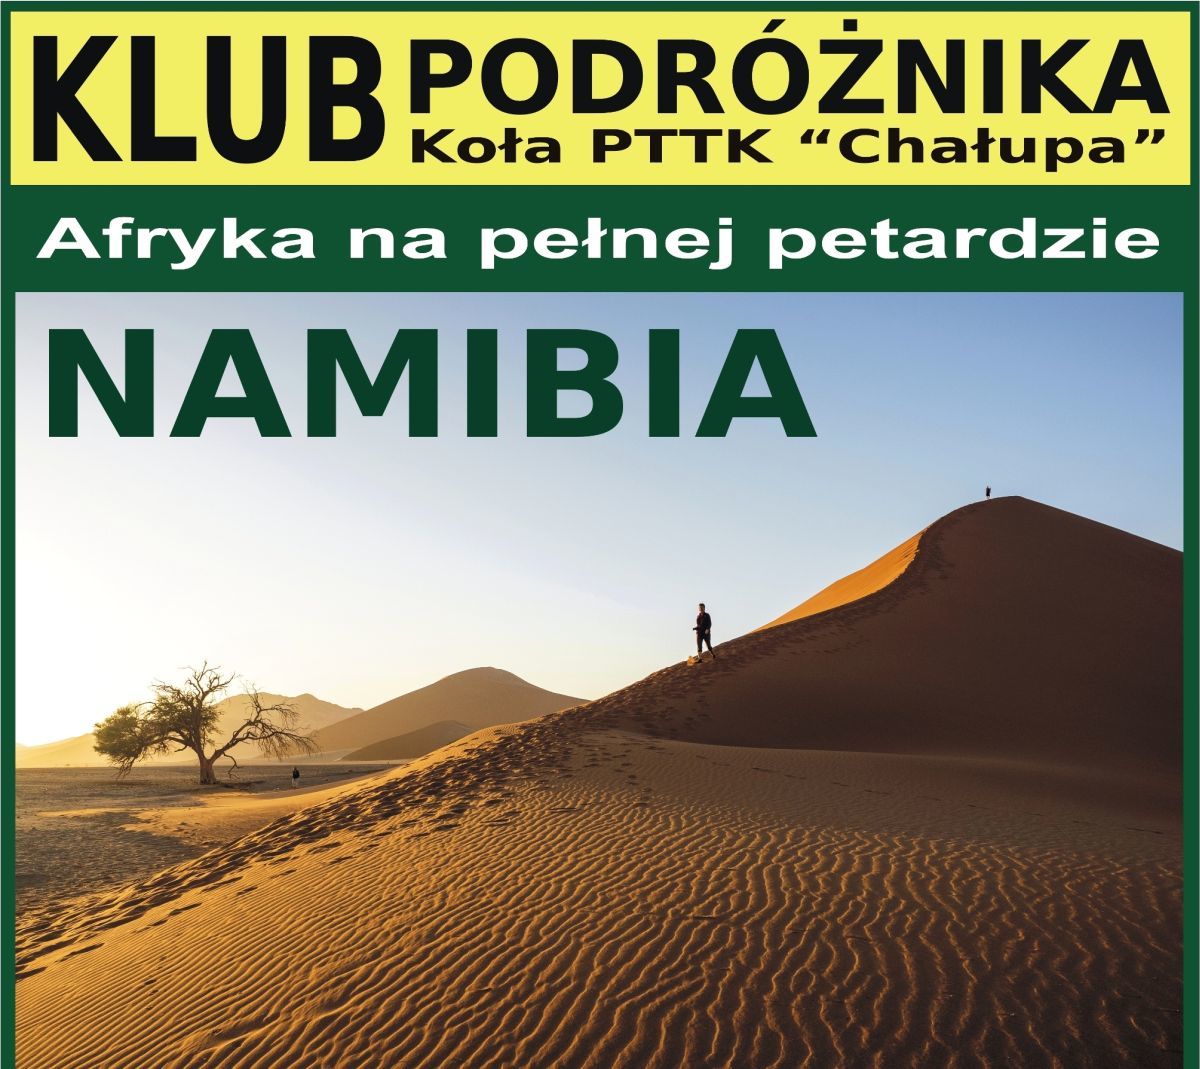 NAMIBIA. Afryka na pełnej petardzie. Spotkanie w Klubie Podróżnika w Andrychowie